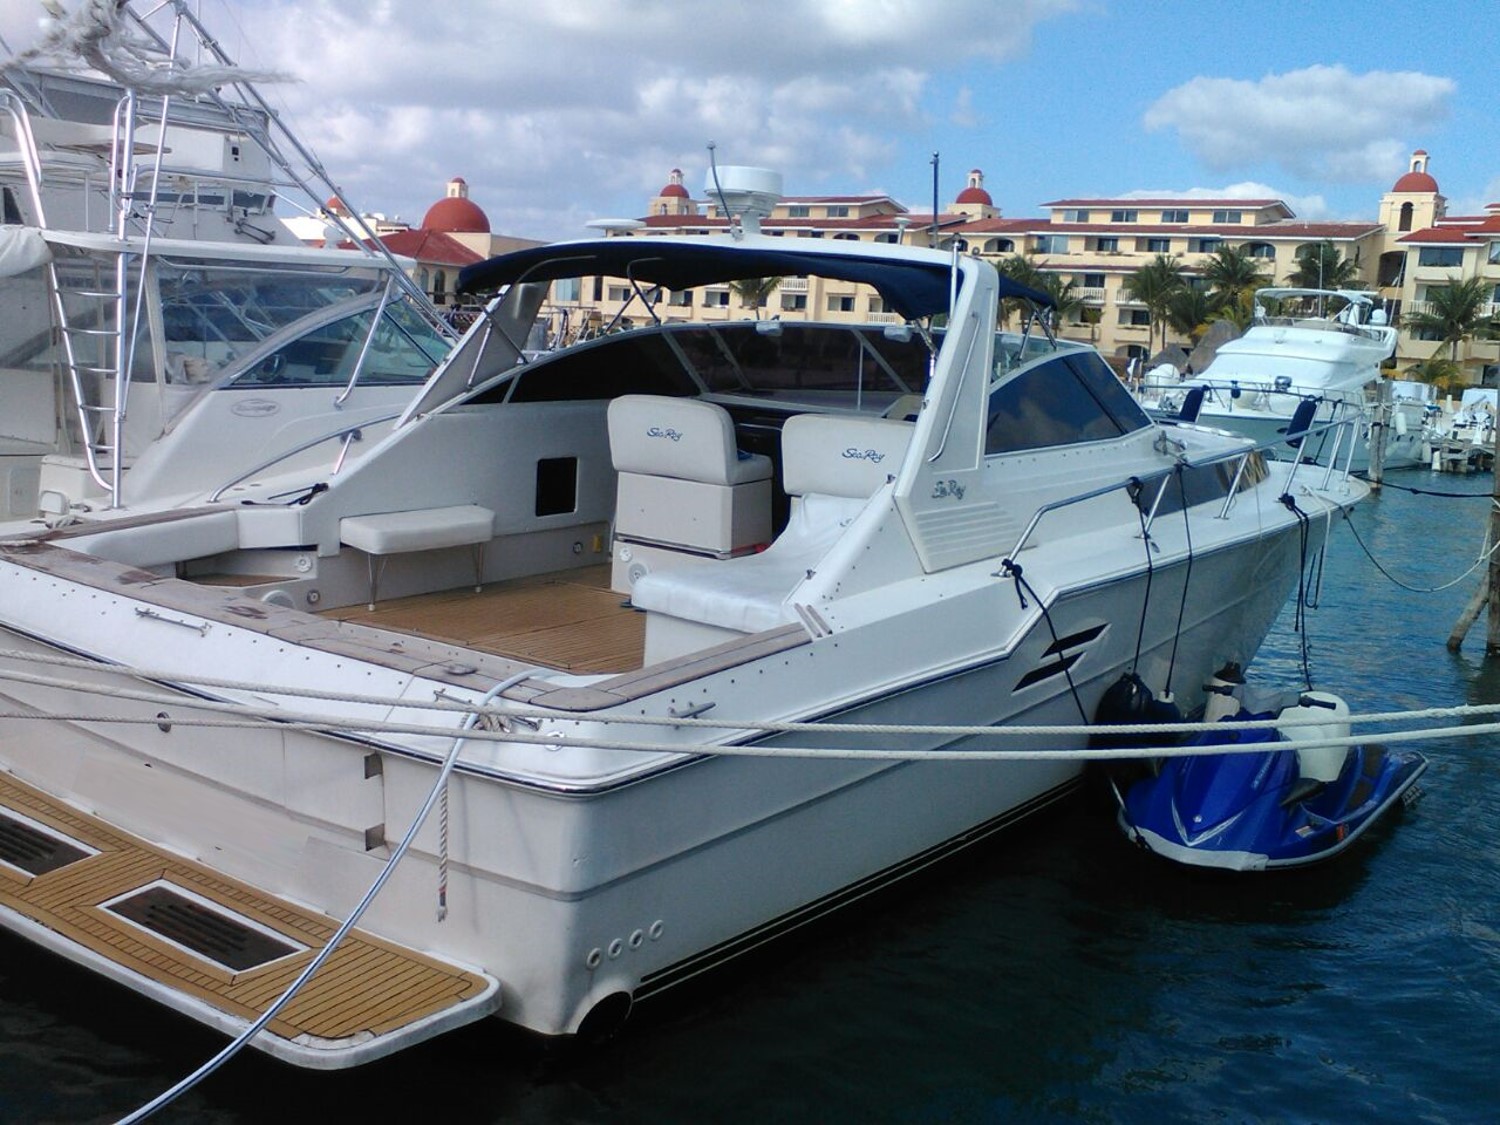 Renta de Yate Sea Ray de 46 pies en Cancún Renta de yate privado para ir a Cozumel y viaje en yate a Holbox todo incluido VIP Servicio